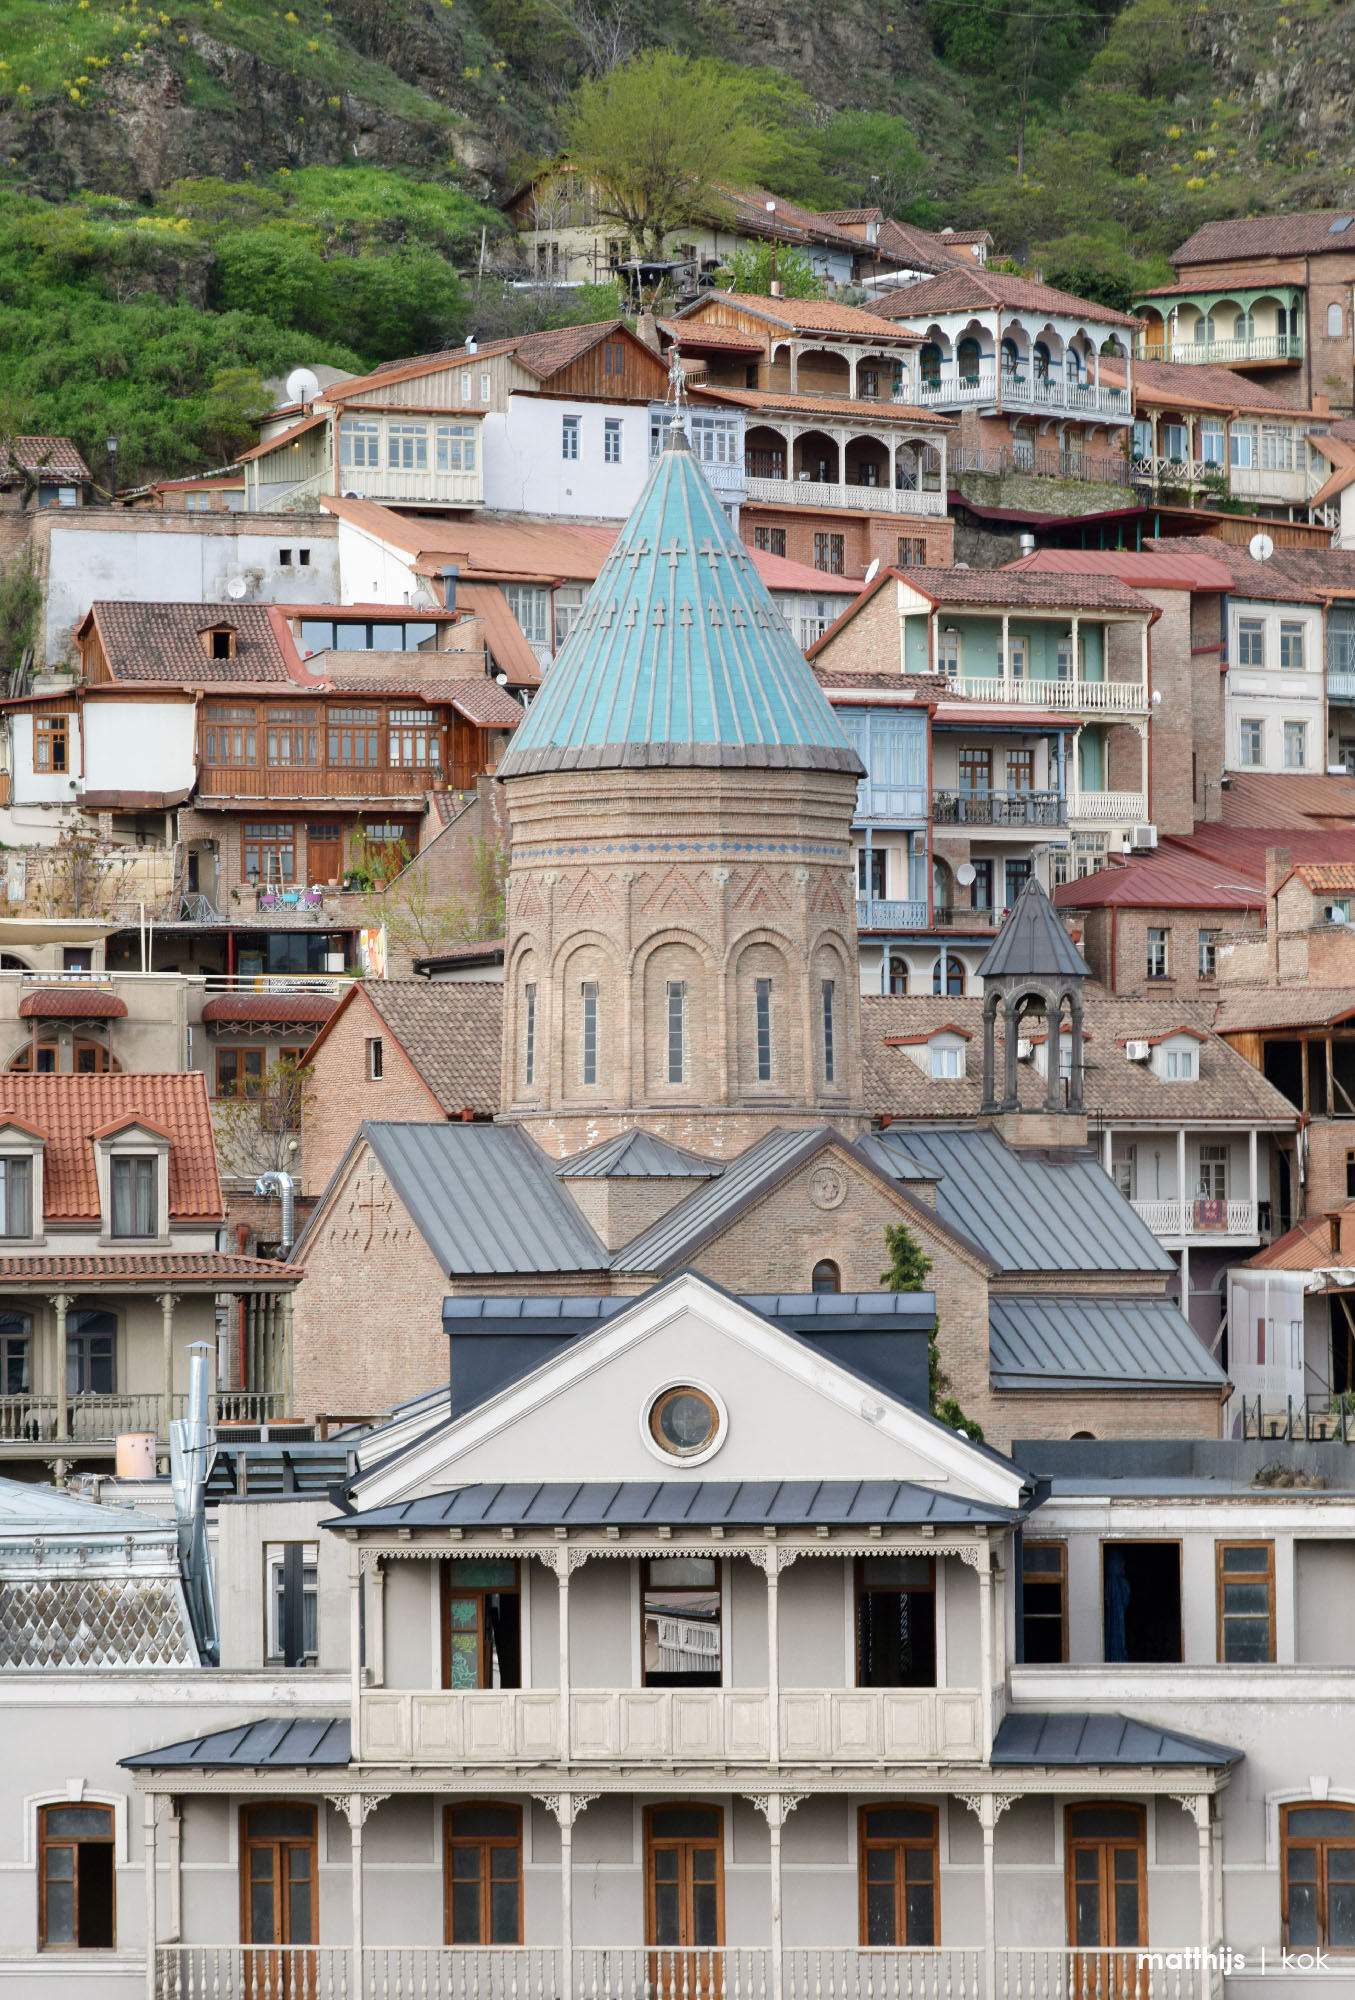 Tbilisi Old Town, Georgia | Photo by Matthijs Kok